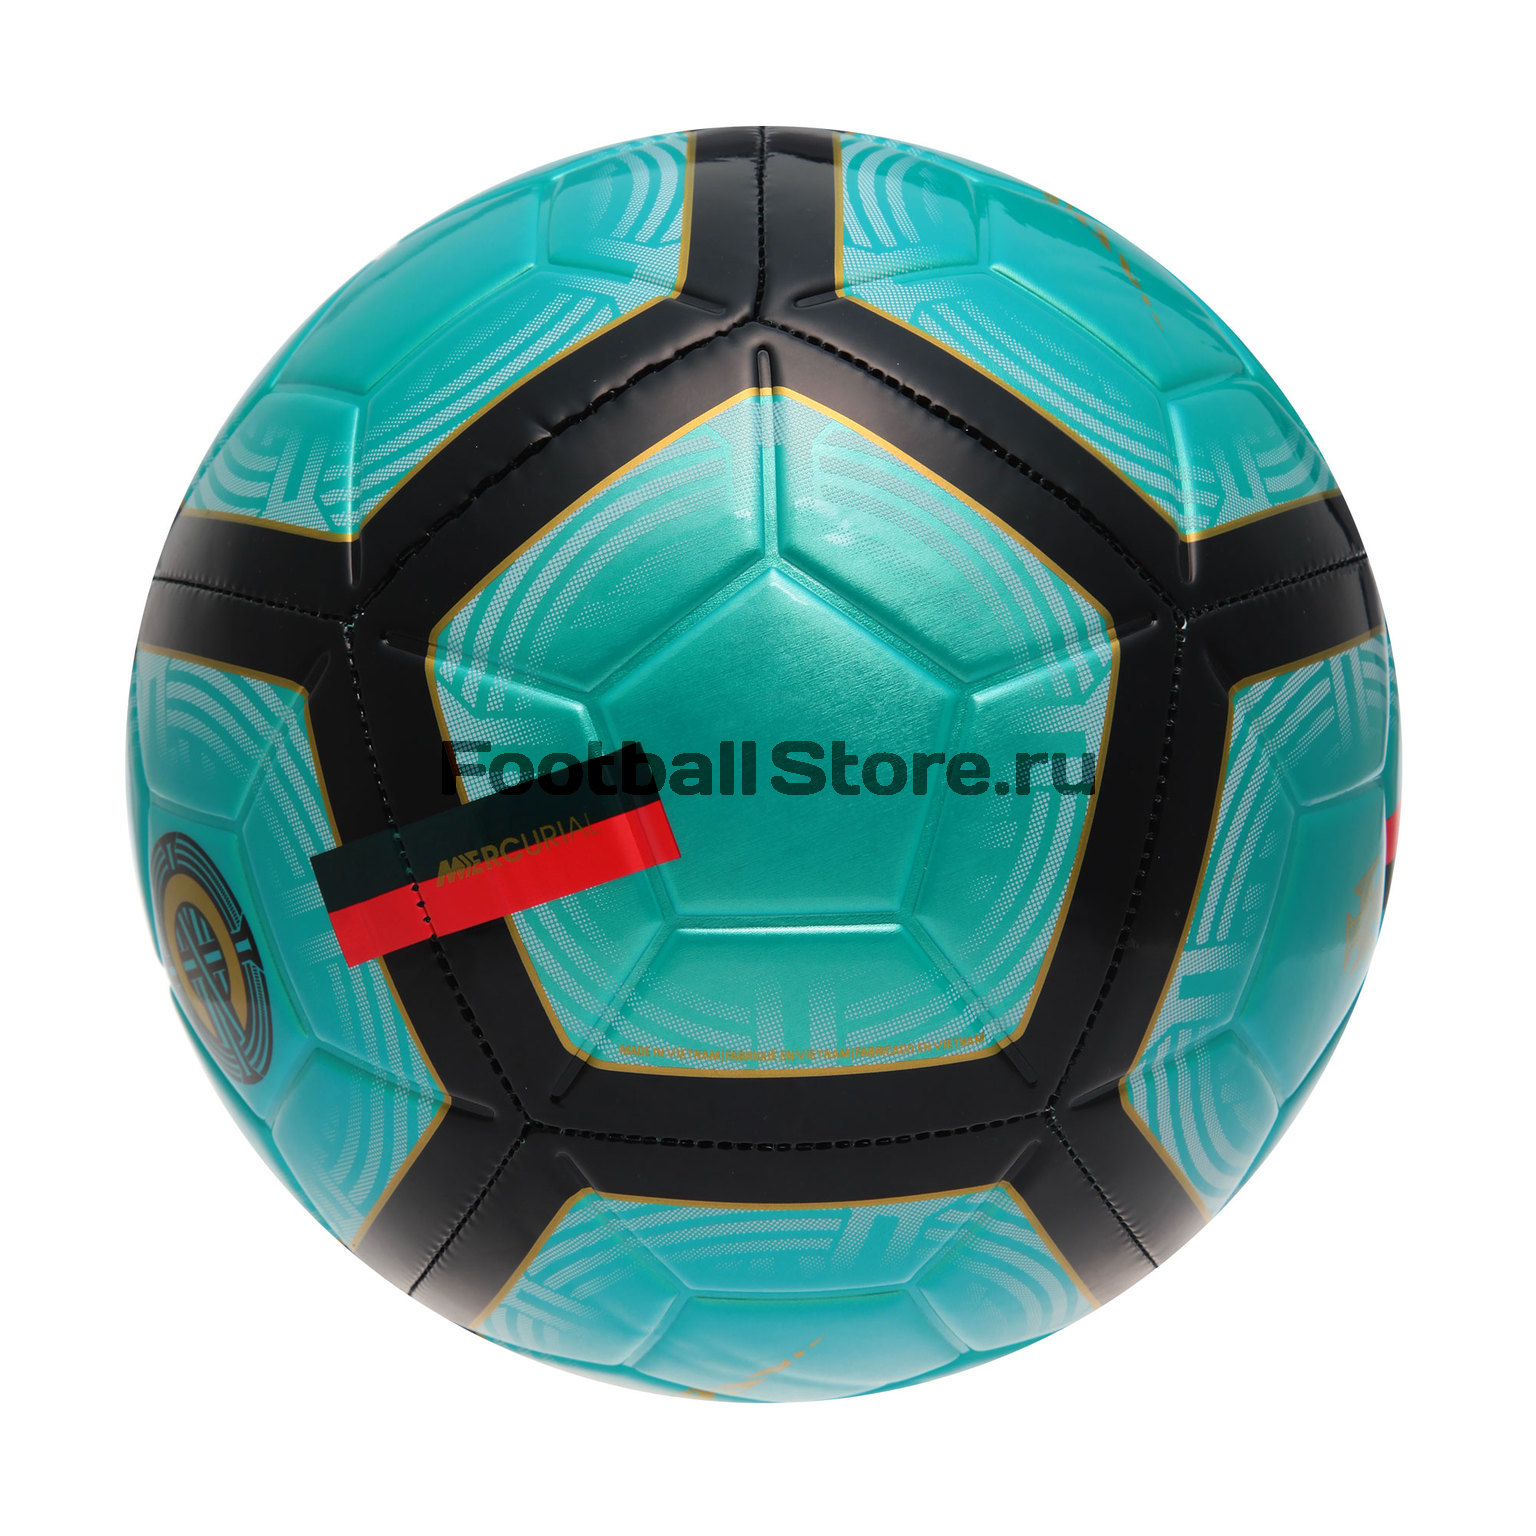 Футбольный мяч Nike Strike CR7 SC3484-321